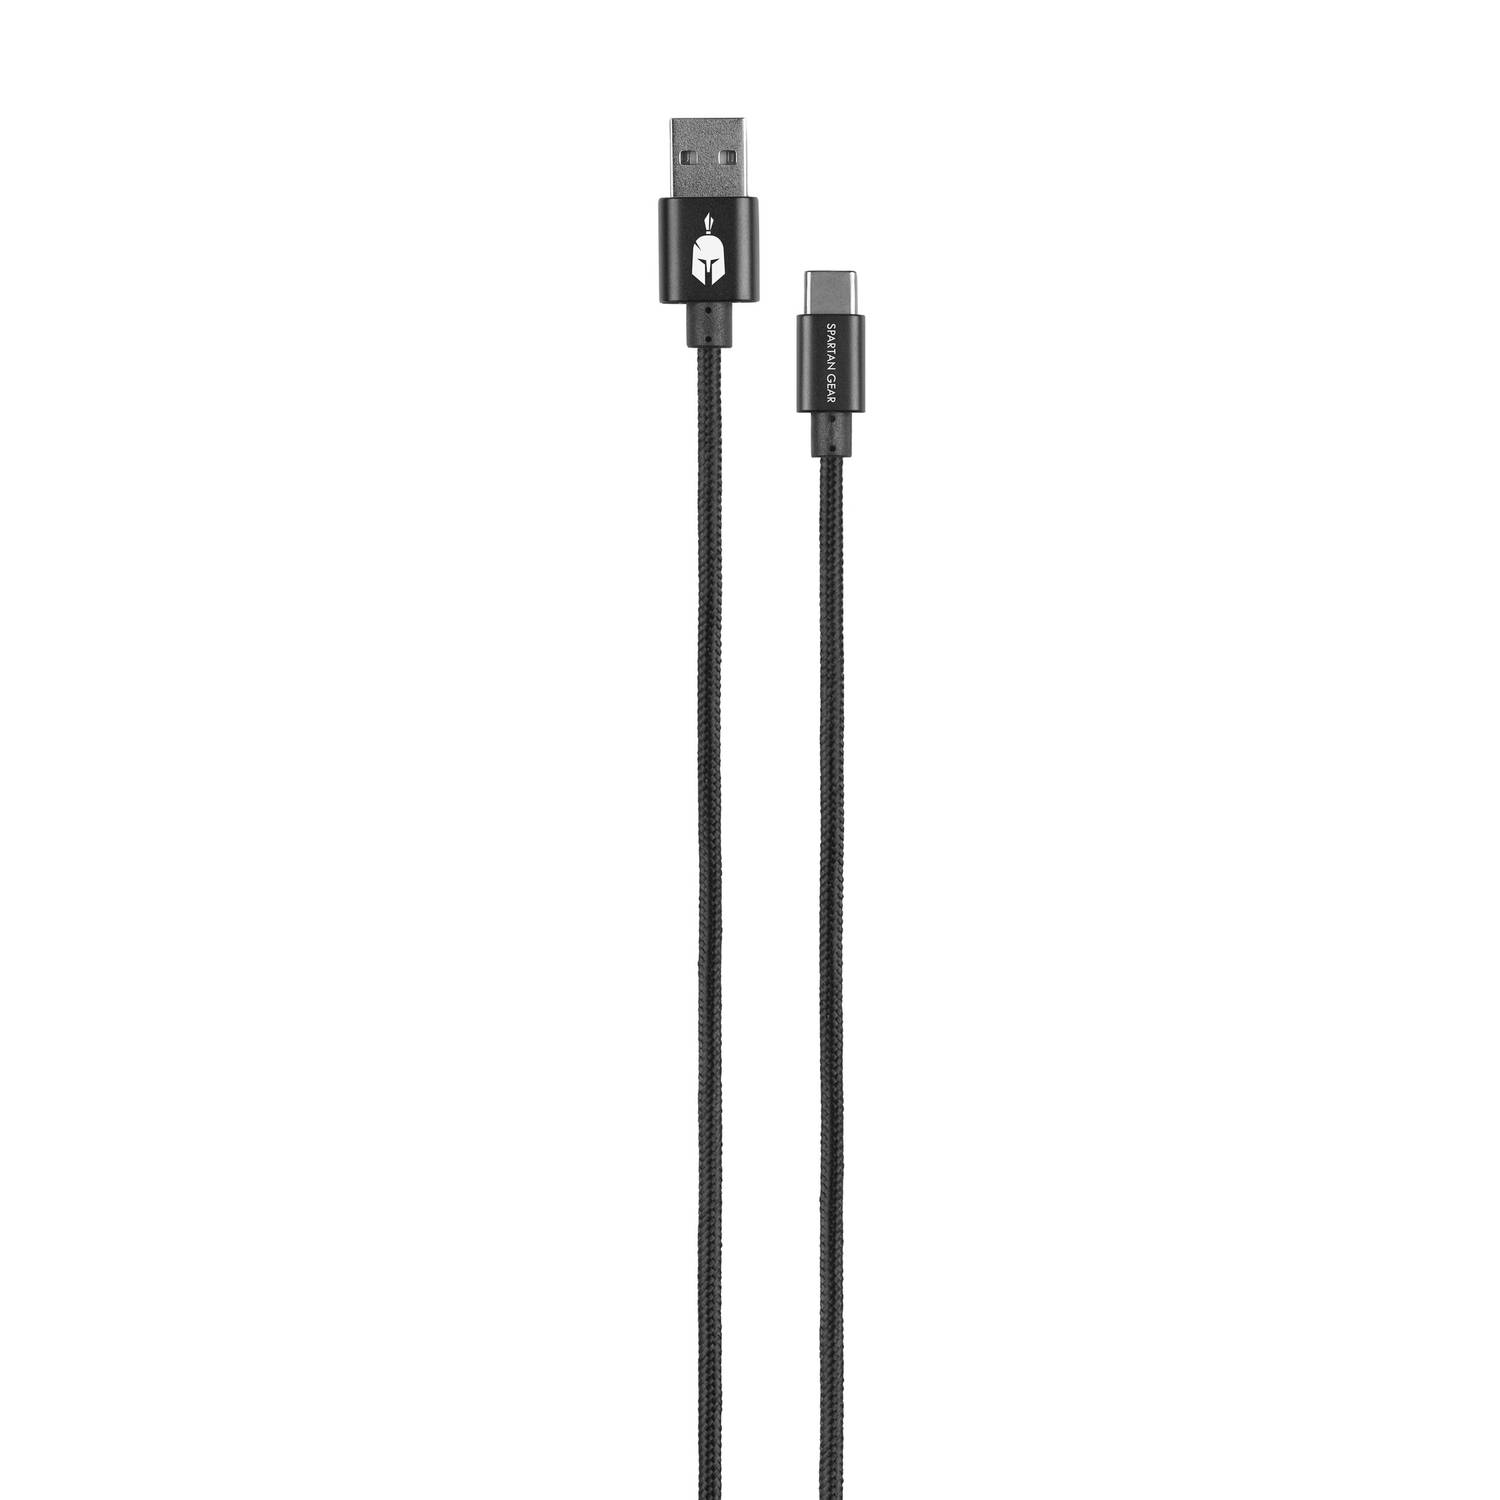 Dubbelzijdige USB-kabel (Type C) Zwart (lengte: 2m geschikt voor PS5, Xbox Series X/S, tablet, mobile)